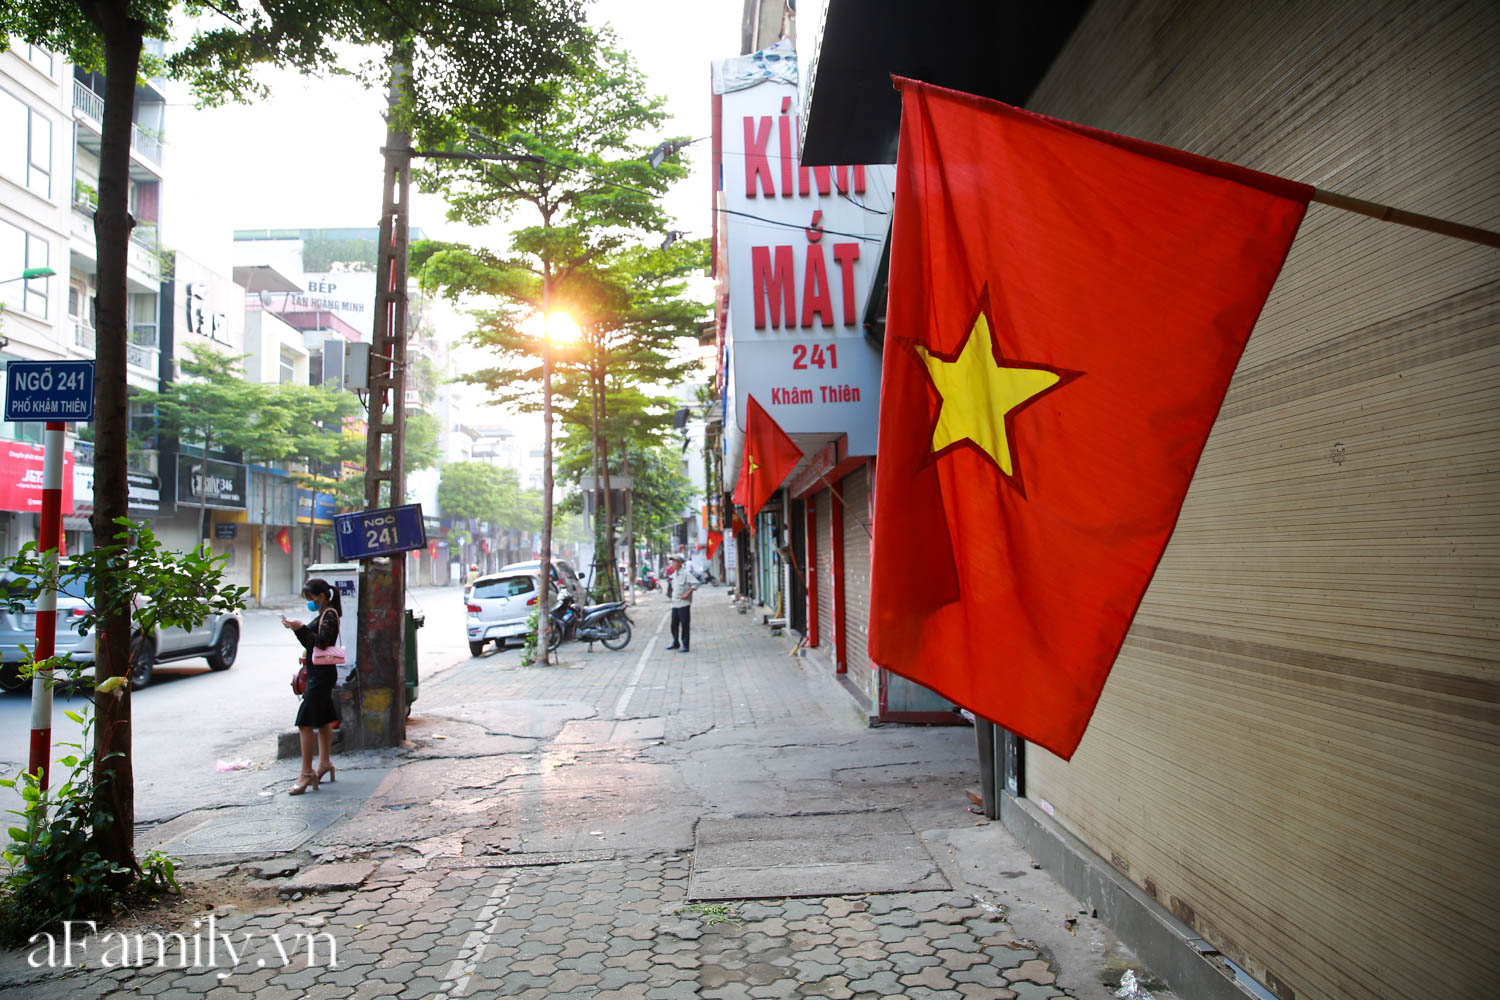 Phố phường vắng thanh, người dân mặc áo cờ Tổ quốc ra đường biểu diễn văn nghệ ngày Quốc khánh - Ảnh 1.